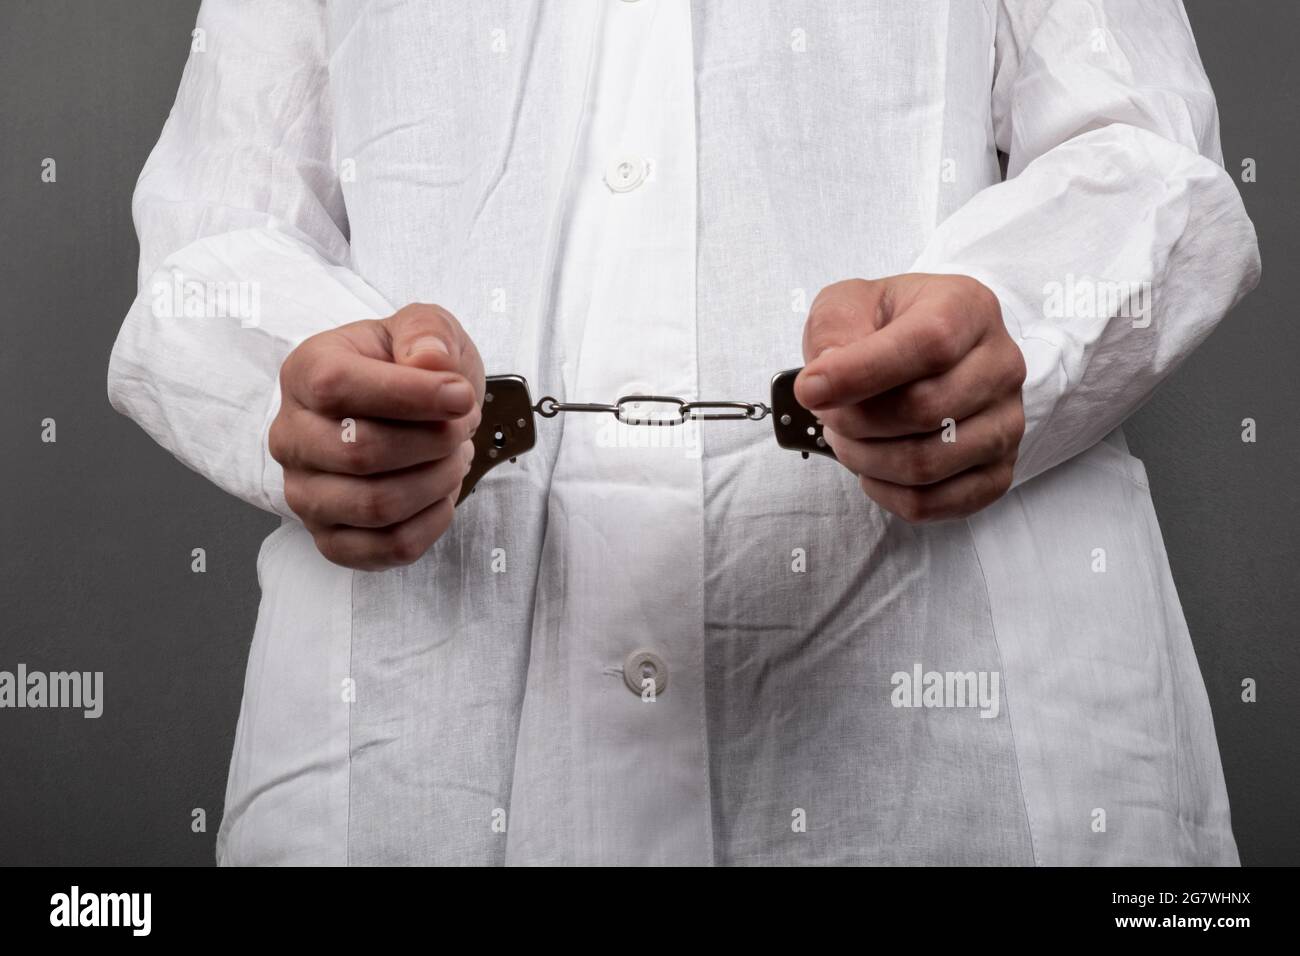 Der Arzt mit Handschellen beging ein Verbrechen und verhaftete ihn wegen des Verkaufs illegaler Drogen. Stockfoto